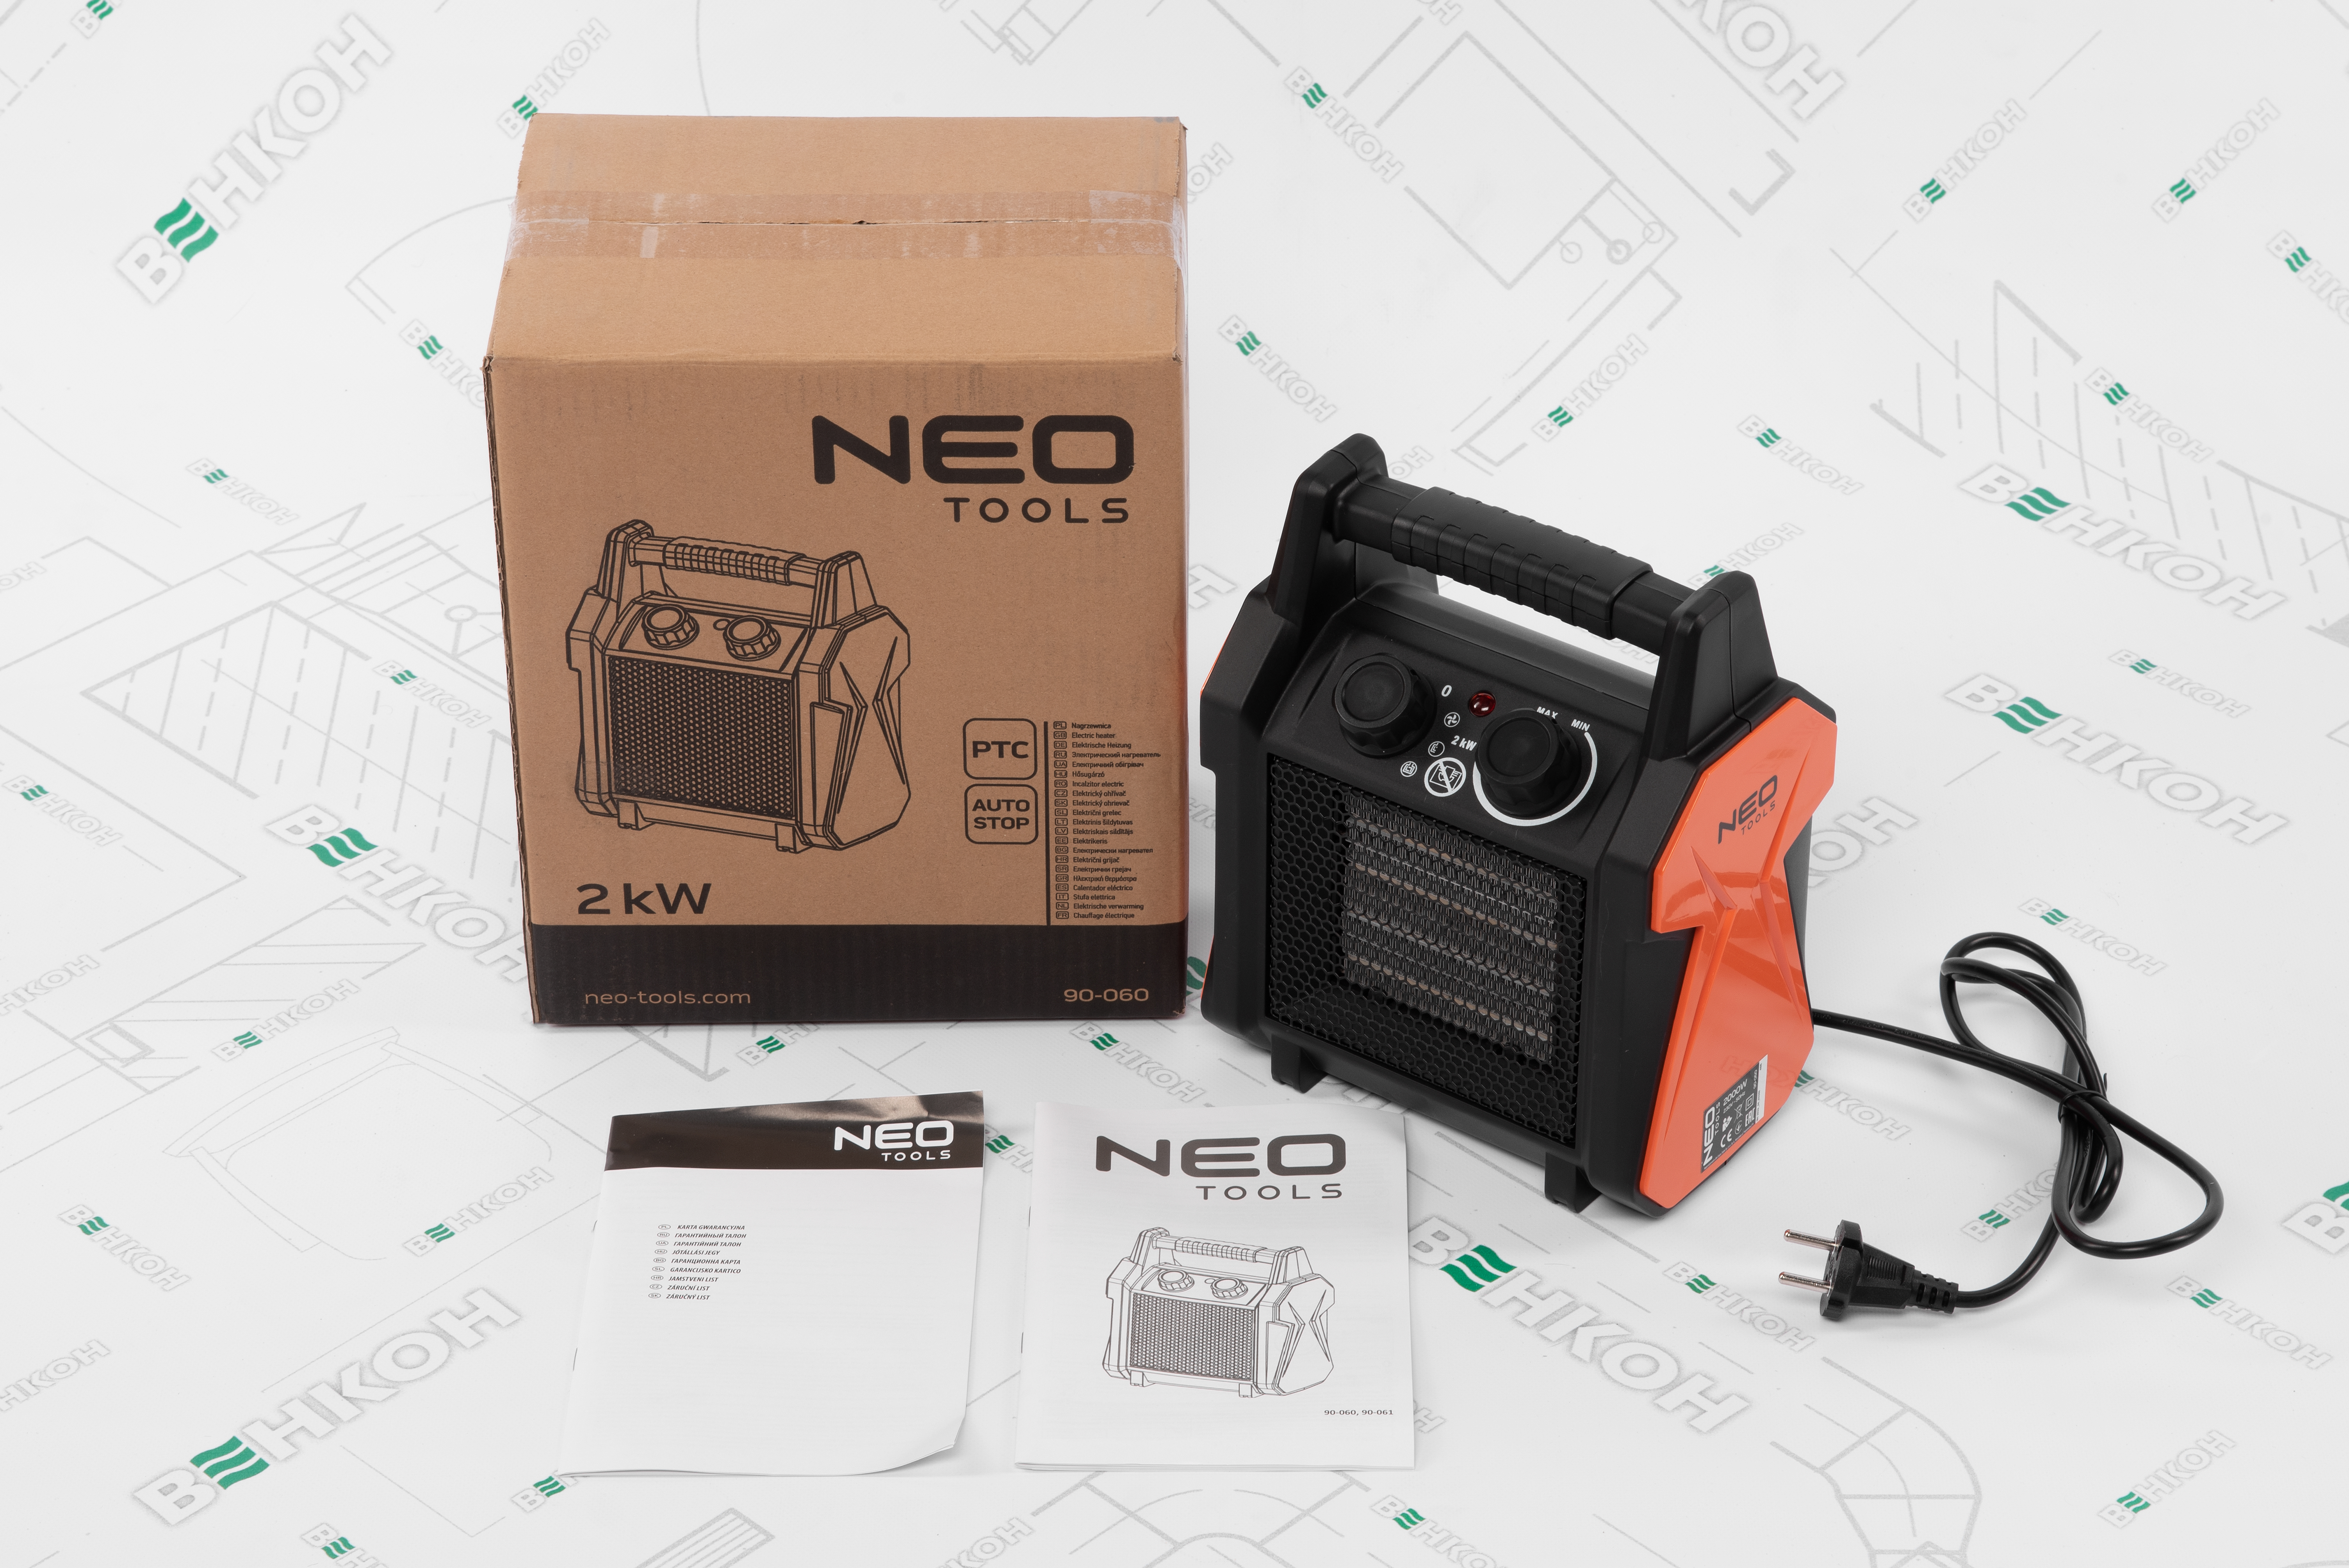 Тепловентилятор Neo Tools 90-060 зовнішній вигляд - фото 9